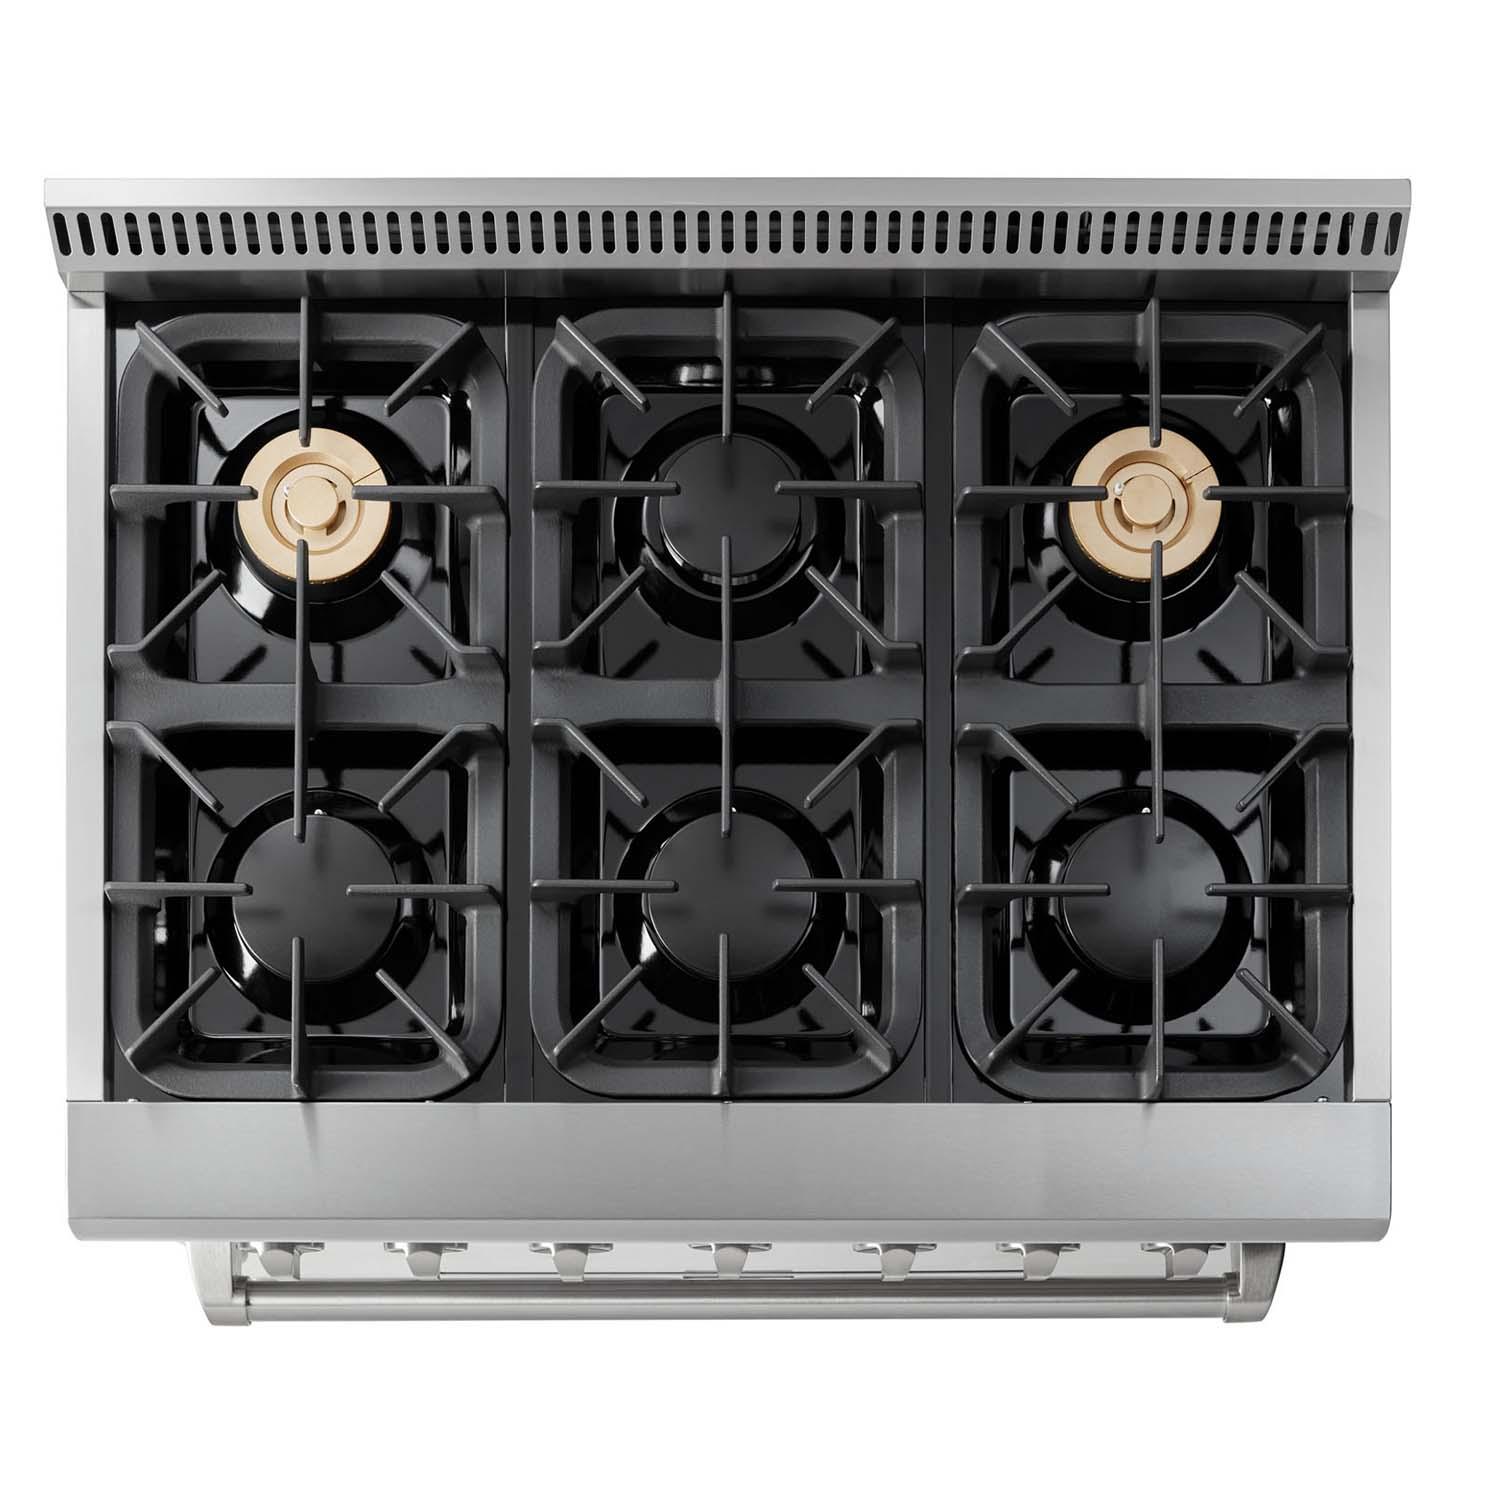 Thor Kitchen 36-inch Professional Dual Fuel Range - Hrd3606u / Hrd3606ulp